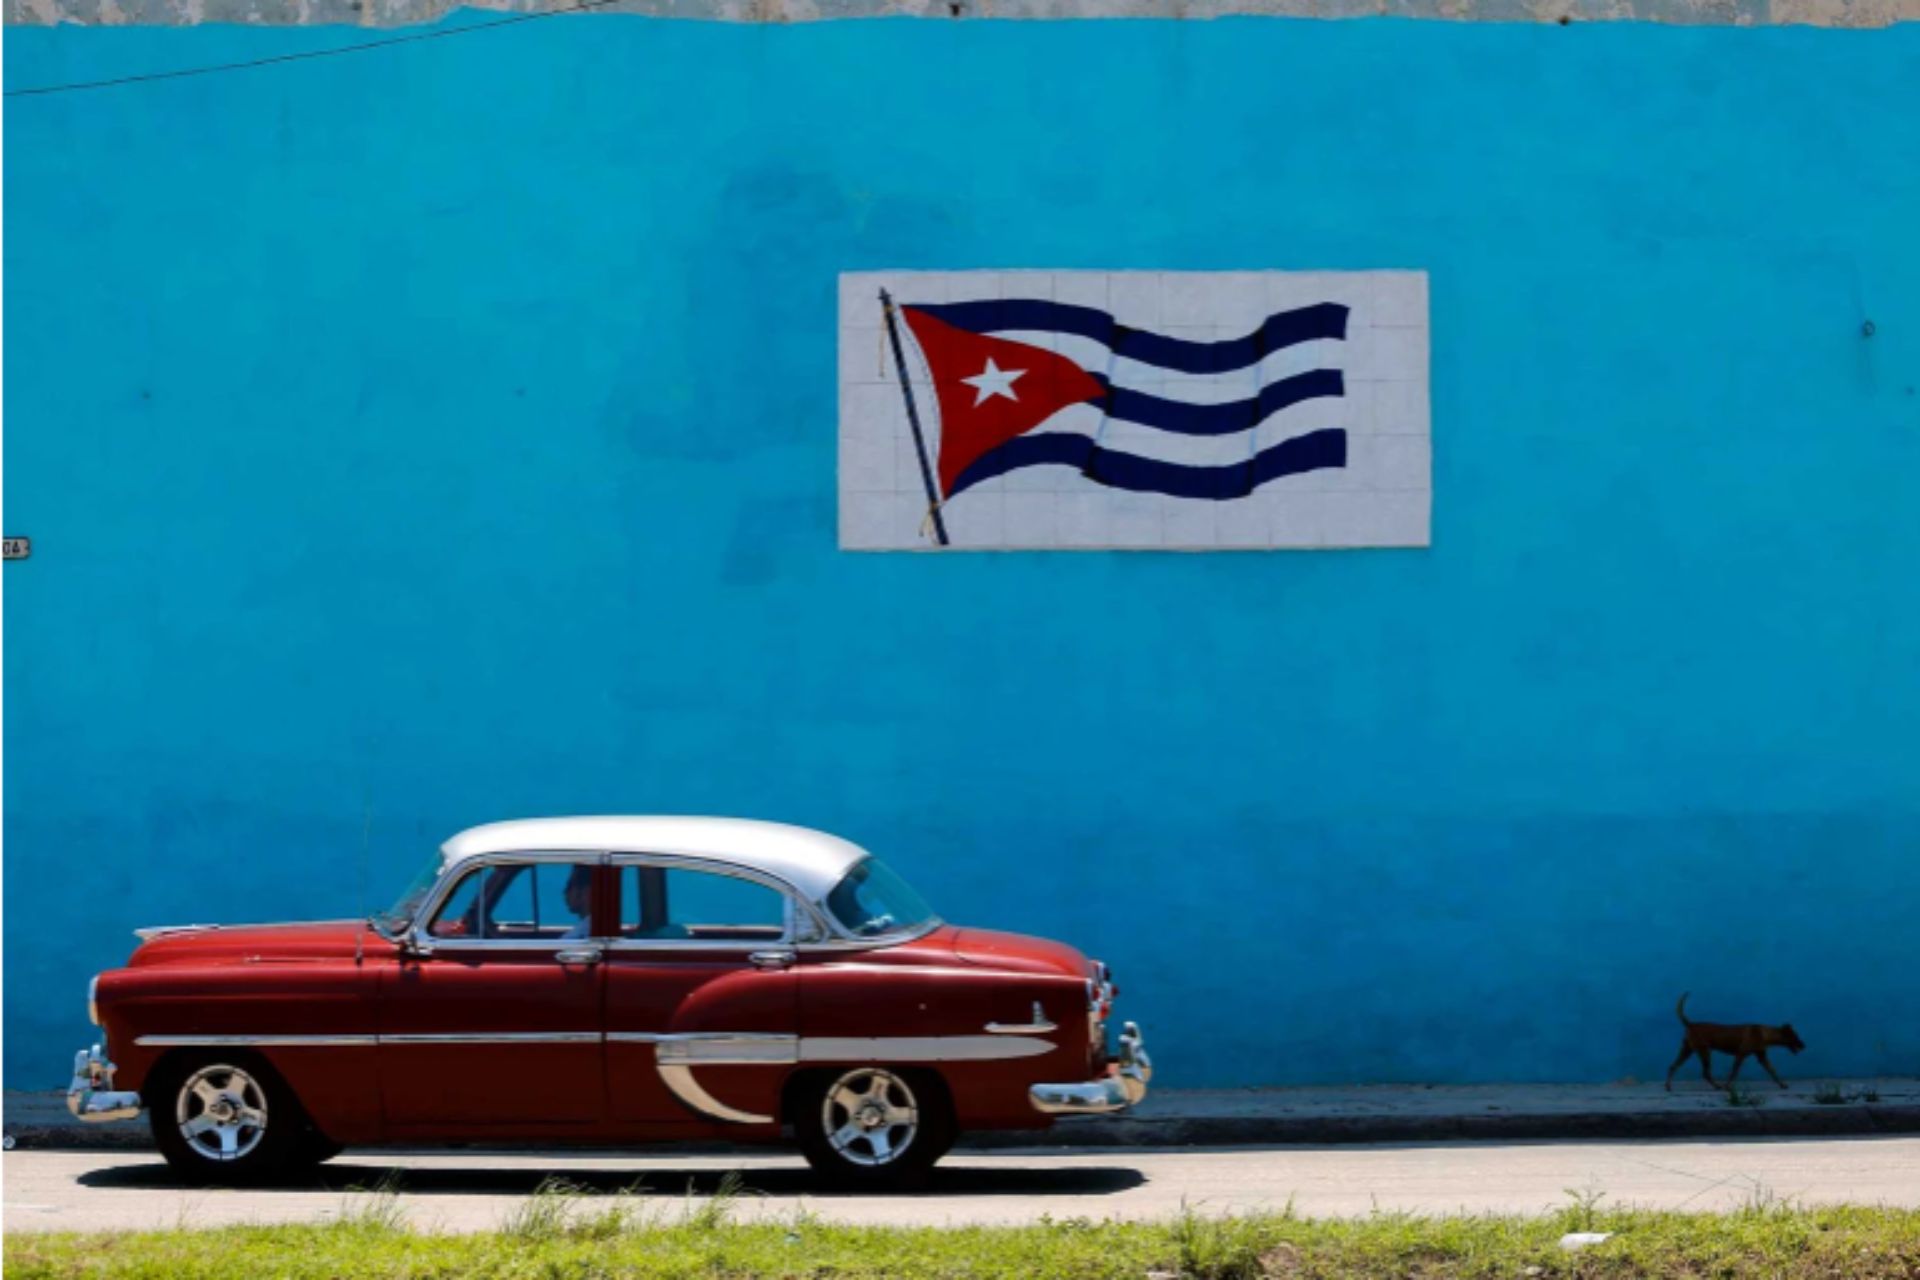 Un análisis prospectivo sobre el futuro de Cuba